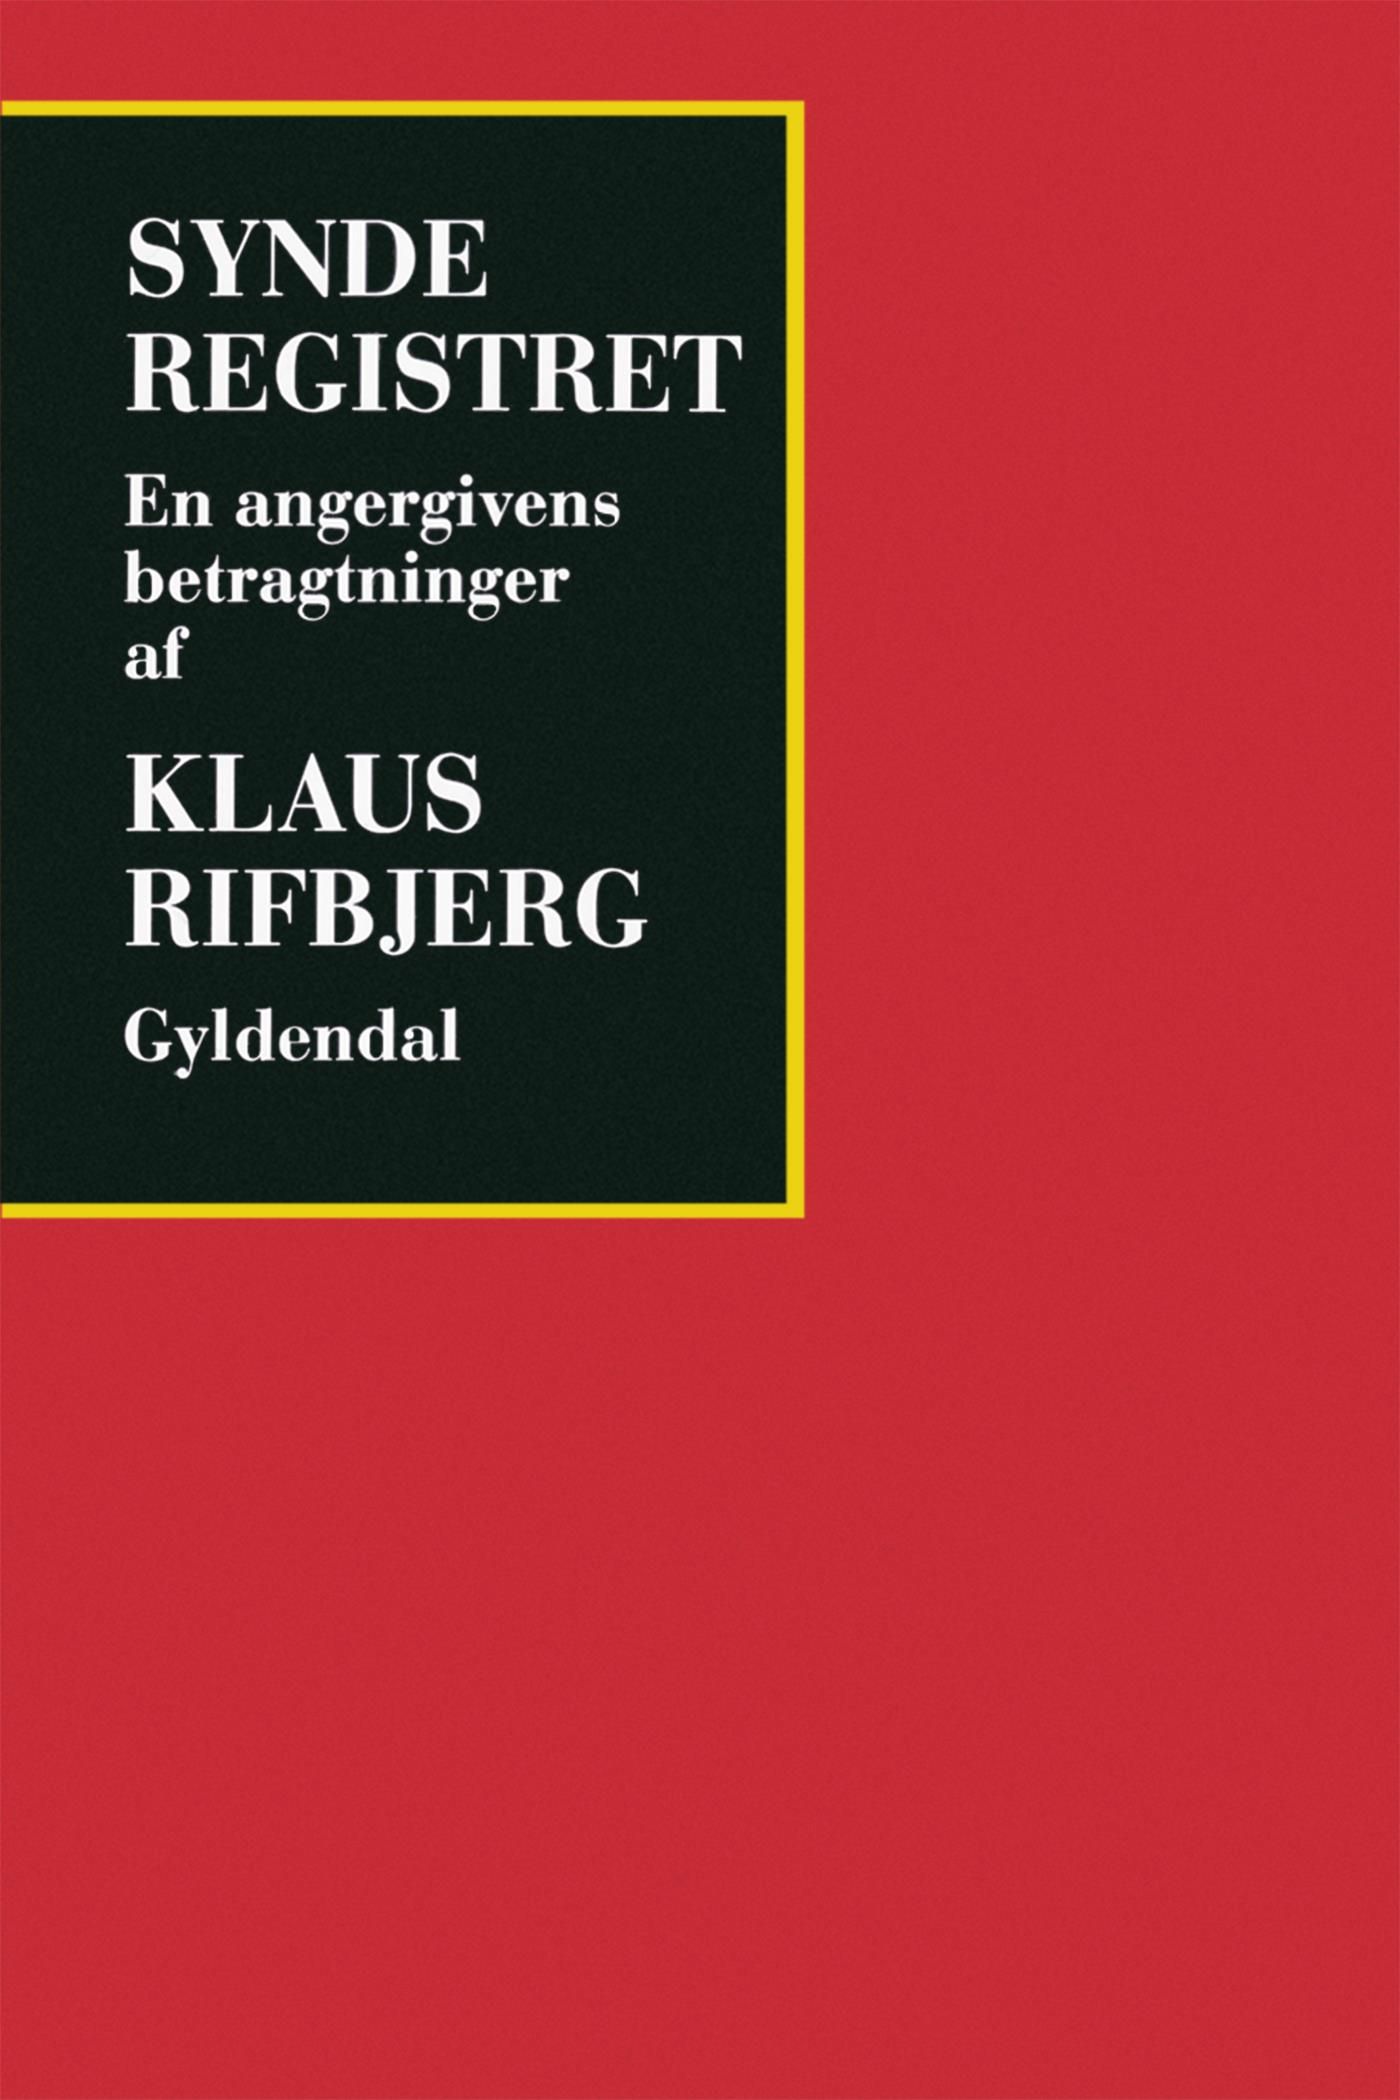 Synderegistret, e-bok av Klaus Rifbjerg